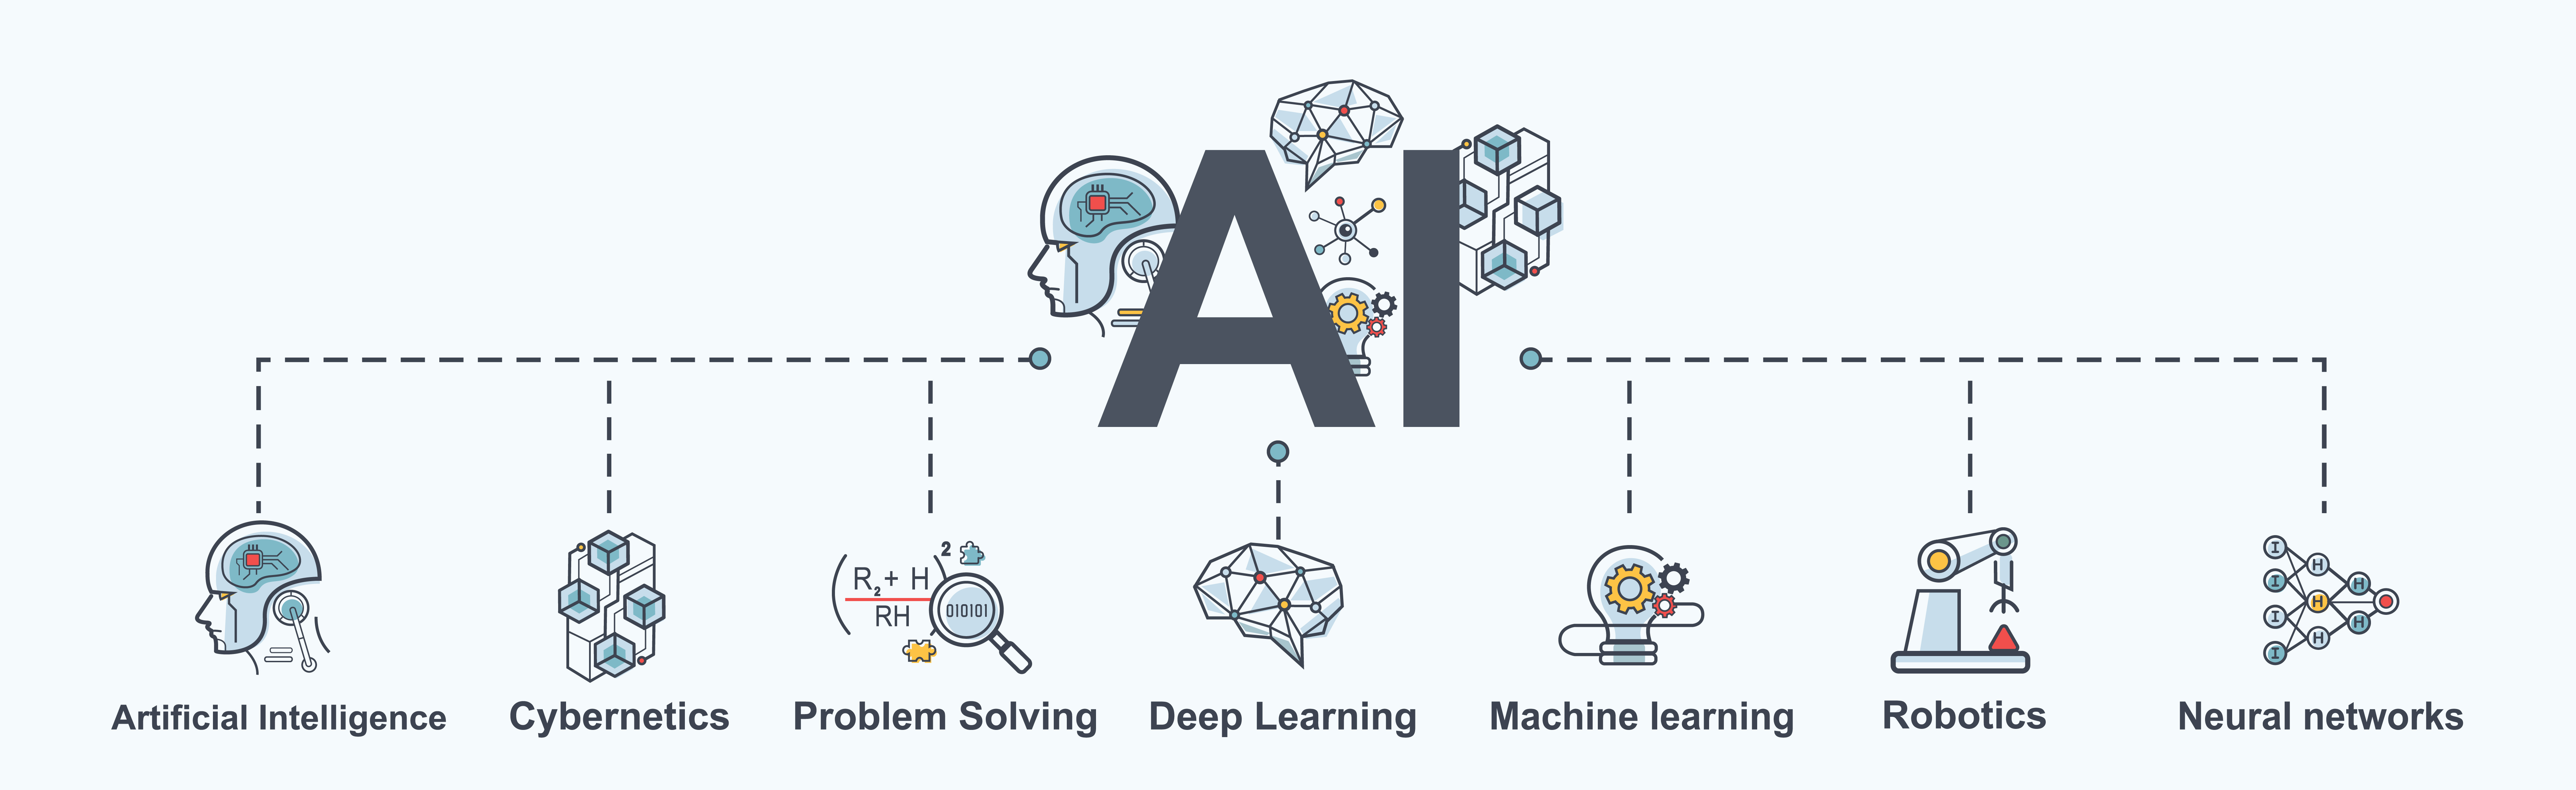 Нейросеть решает капчи. Машинное обучение и искусственный интеллект. Машинное обучение нейросетей. Машинное обучение обучение problem. Искусственный интеллект (ai) и машинное обучение.